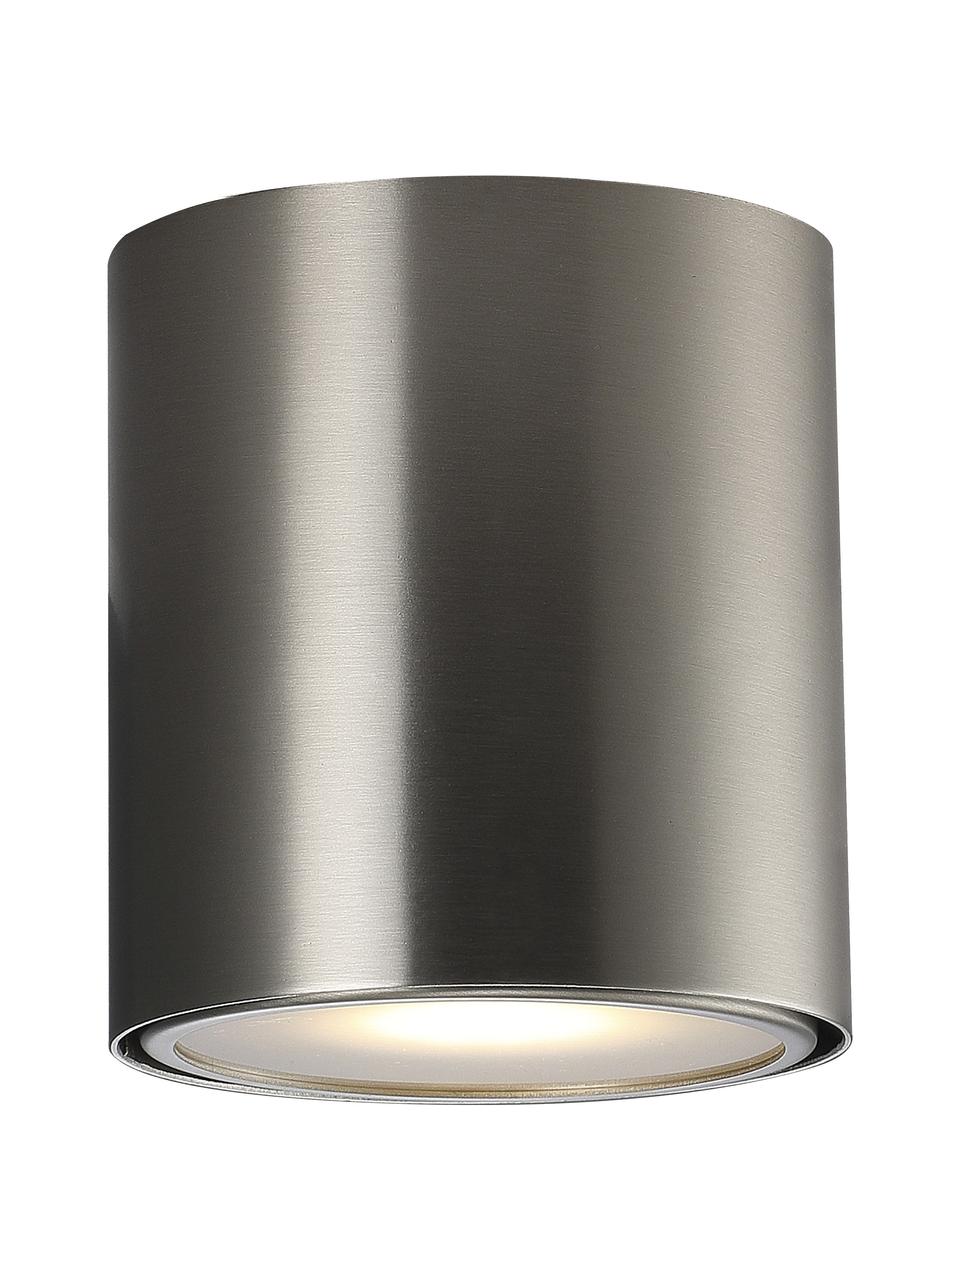 Lampa sufitowa spot Ipsa, Odcienie srebrnego, Ø 10 x W 10 cm